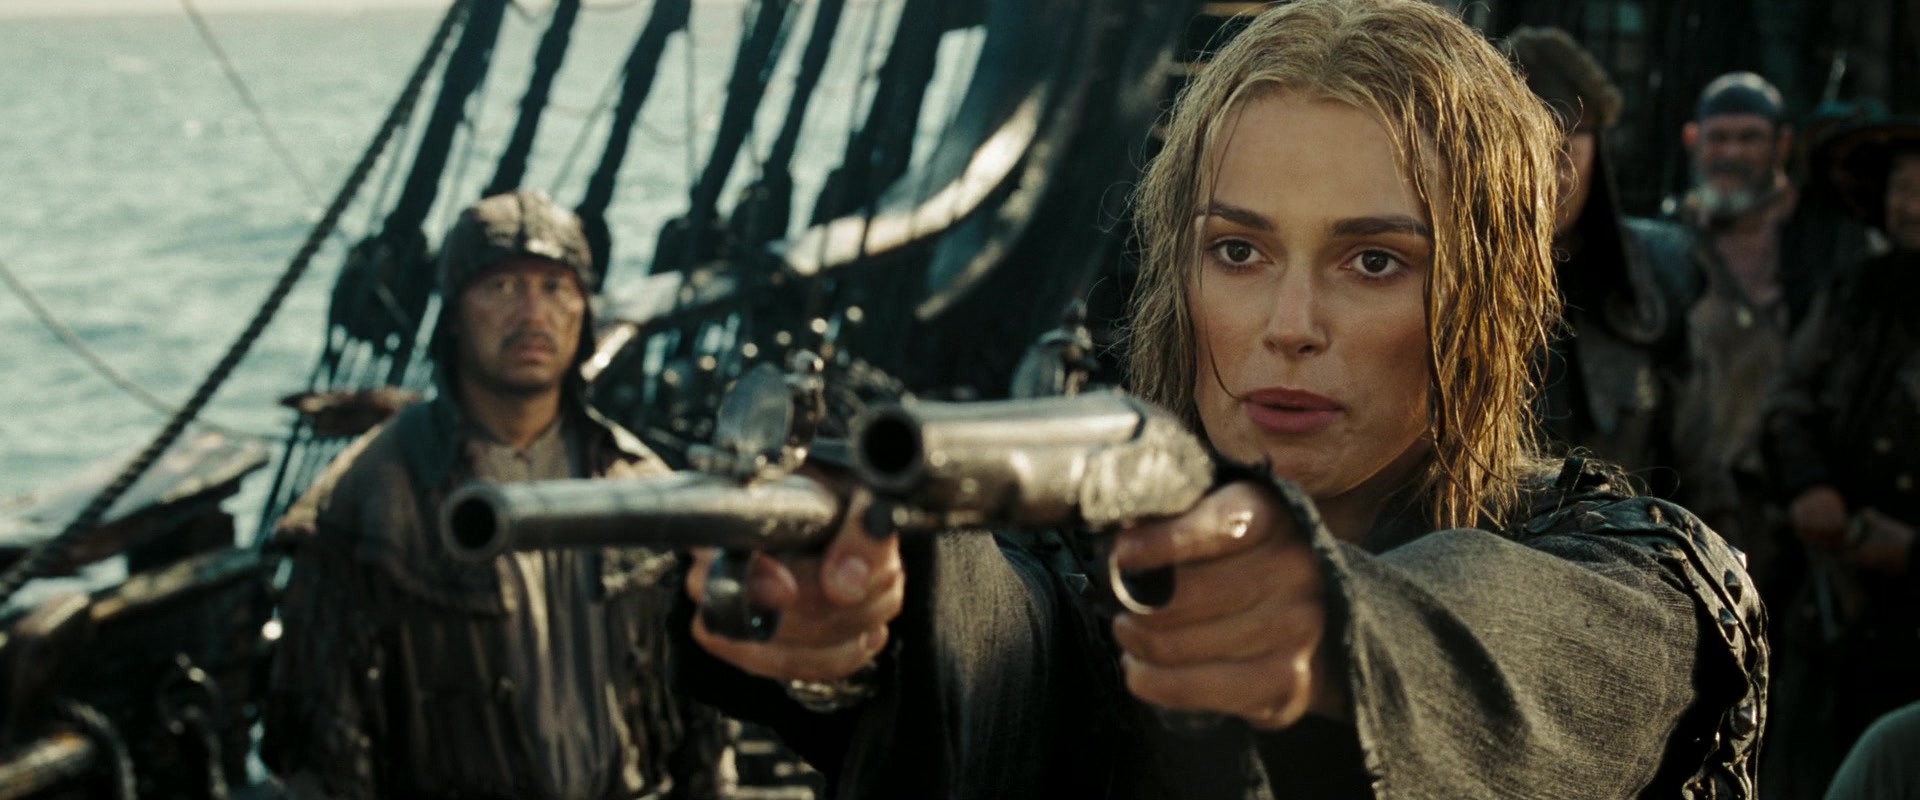 Elizabeth Swann (Keira Knightley) baseia-se no Capitão Jack Sparrow (Johnny Depp) em Piratas do Caribe: O Baú da Morte (2006) via Blu-ray